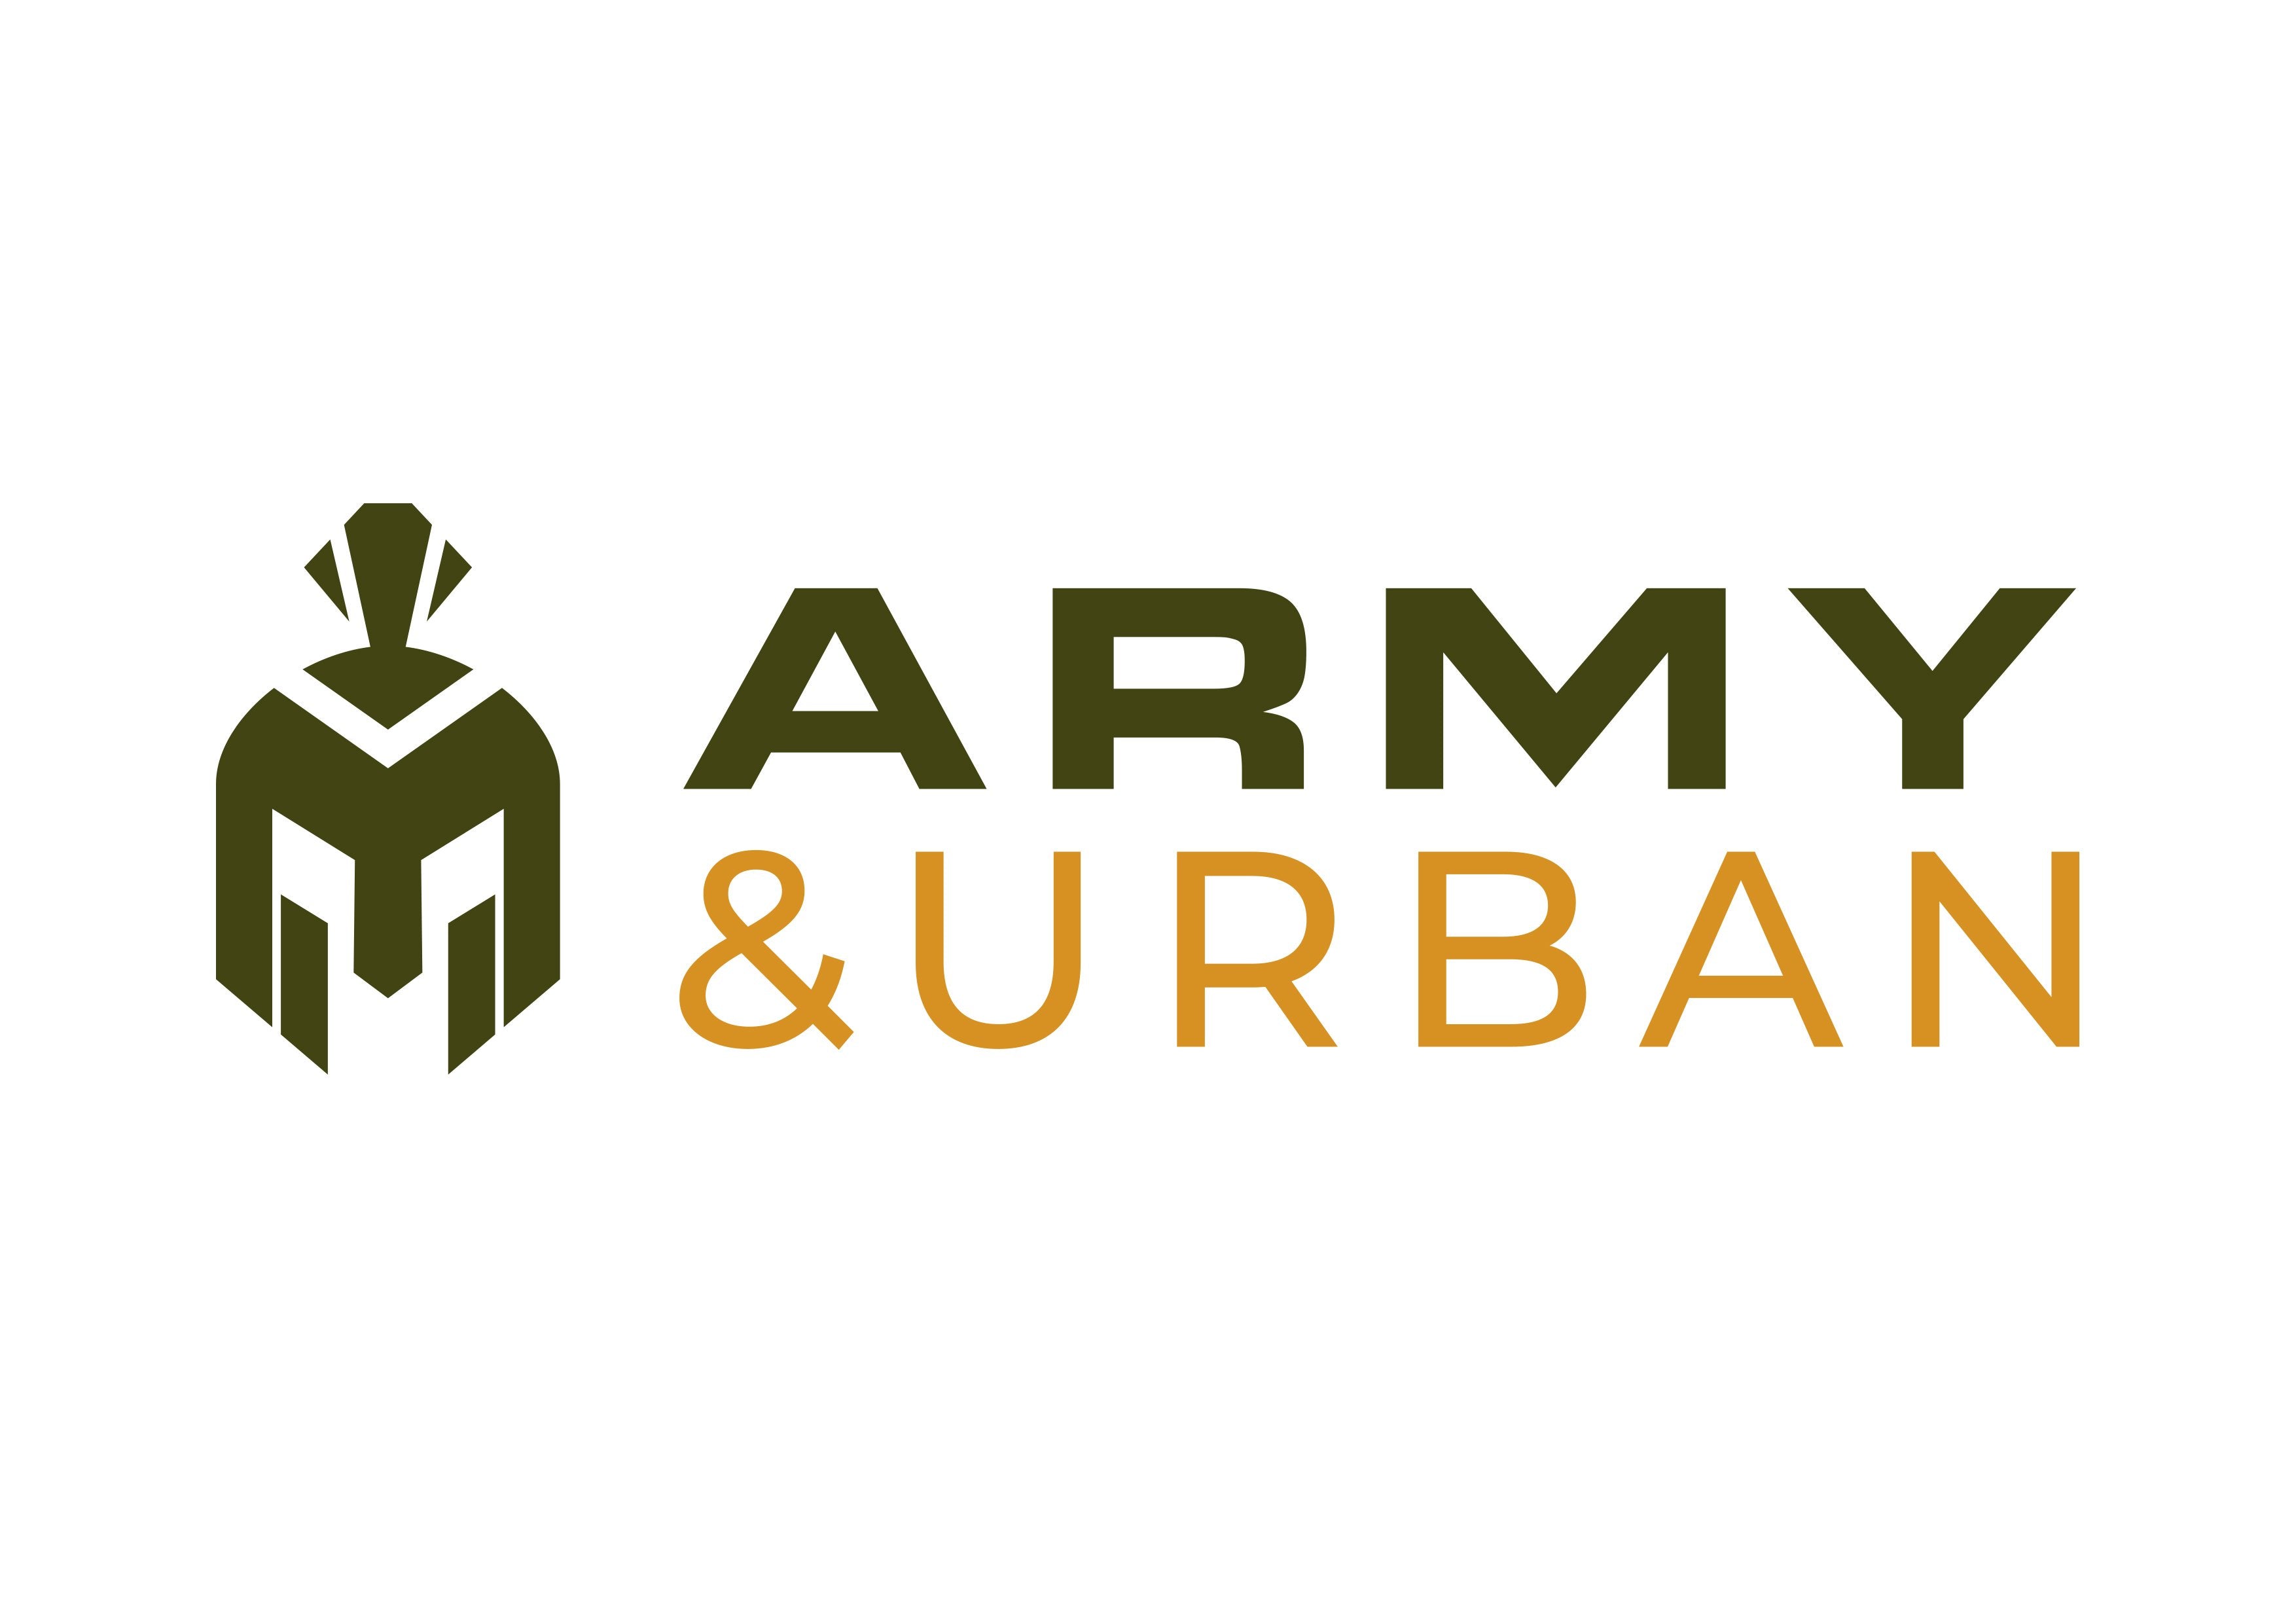 Army&Urban